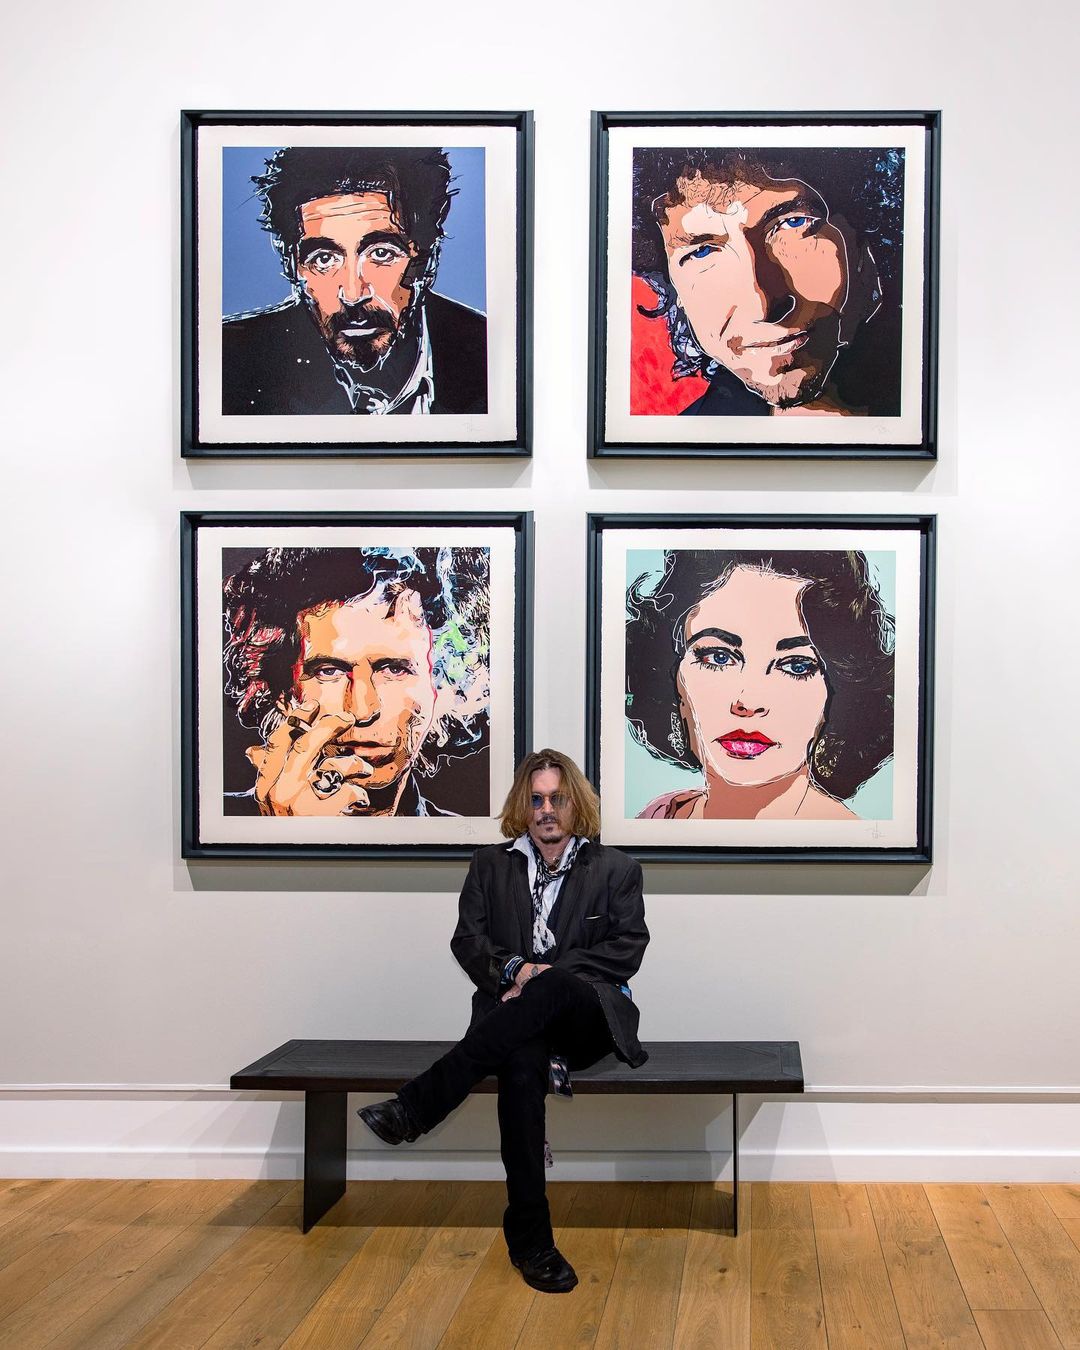 Ο Johnny Depp επεκτείνει το τεράστιο ταλέντο του ζωγραφίζοντας άλλους διάσημούς που θαυμάζει